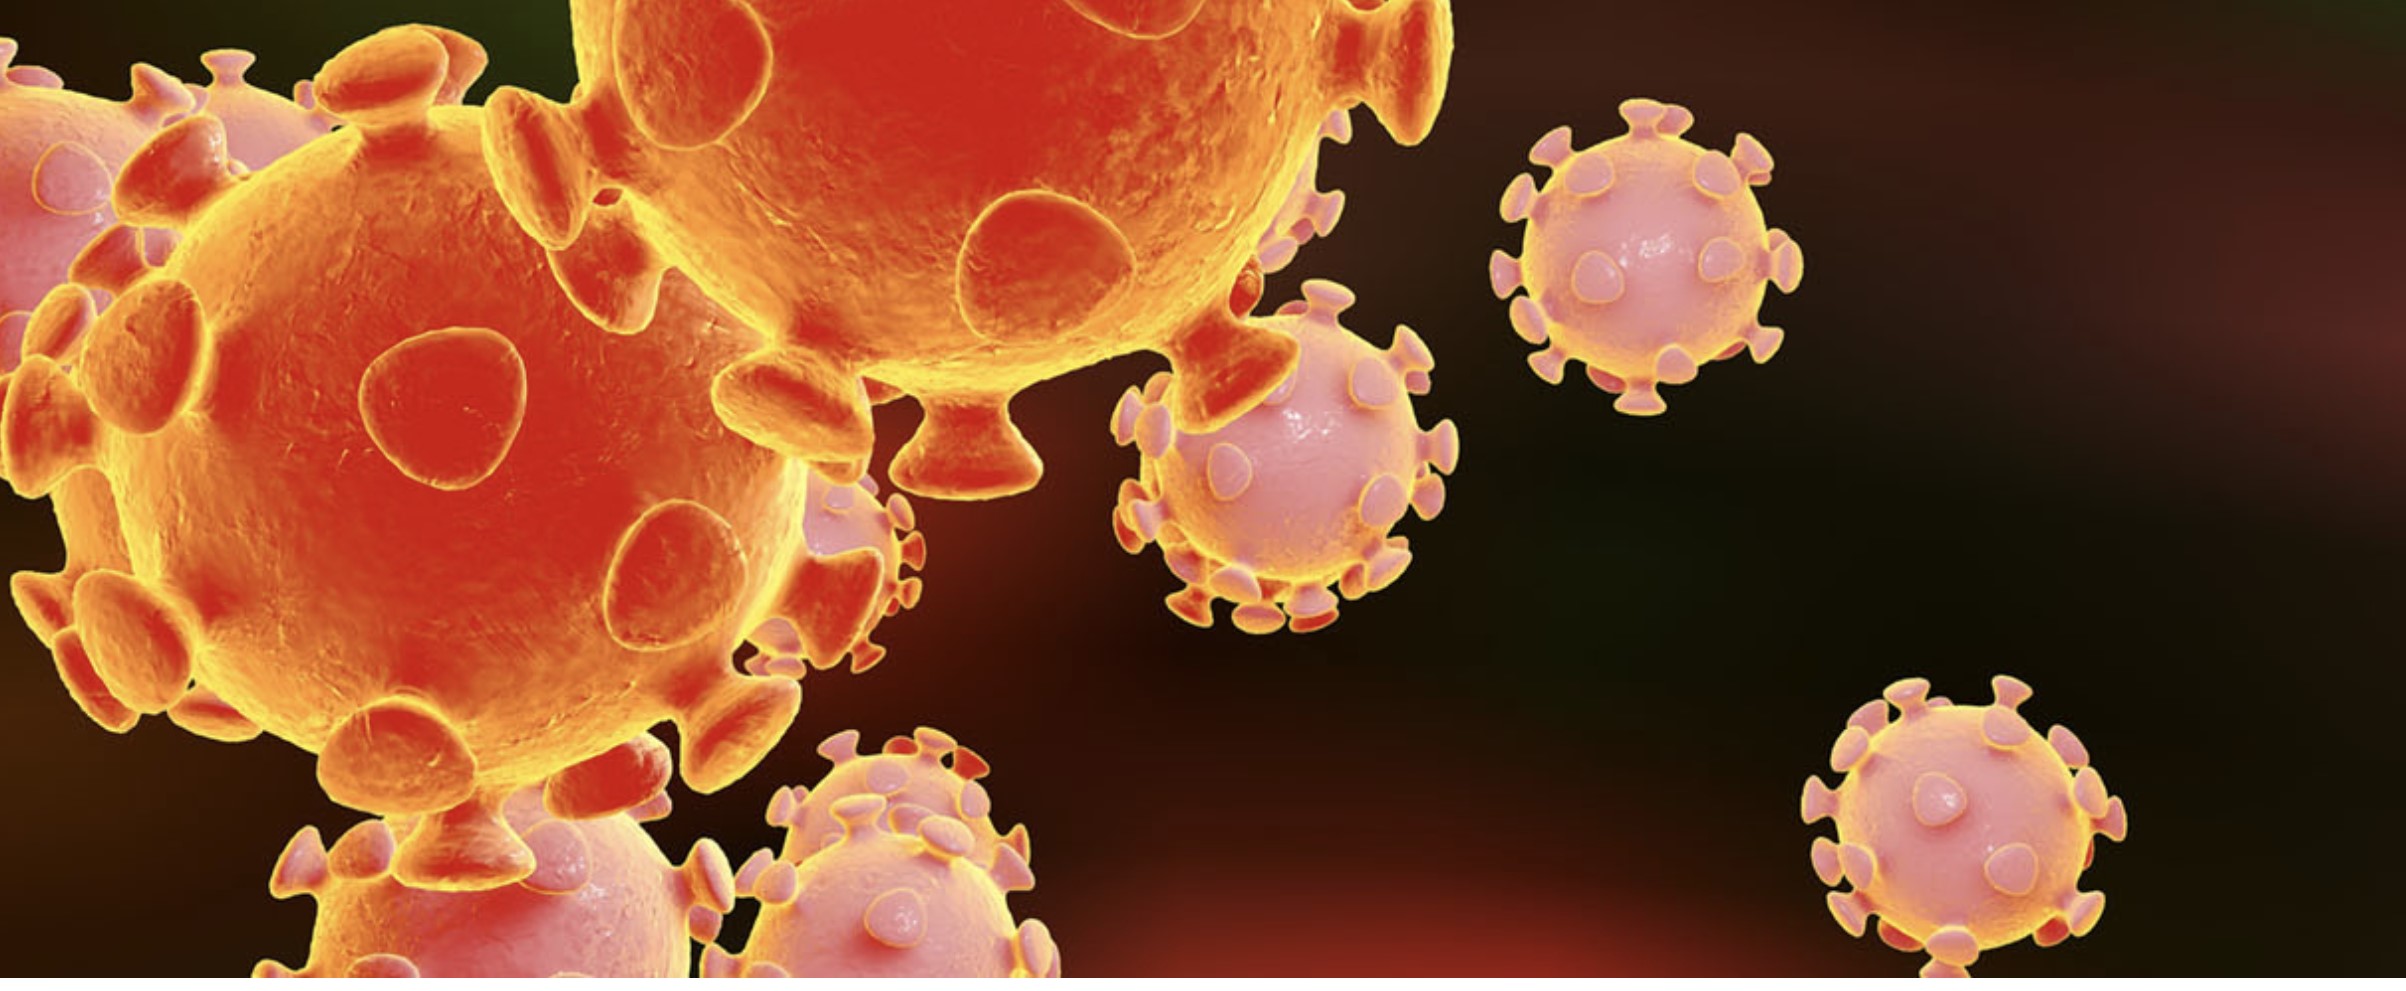 การติดเชื้อโคโรน่าไวรัสสายพันธุ์ใหม่ 2019 (Novel coronavirus 2019) โดย ผศ.พญ.ศรัญญา